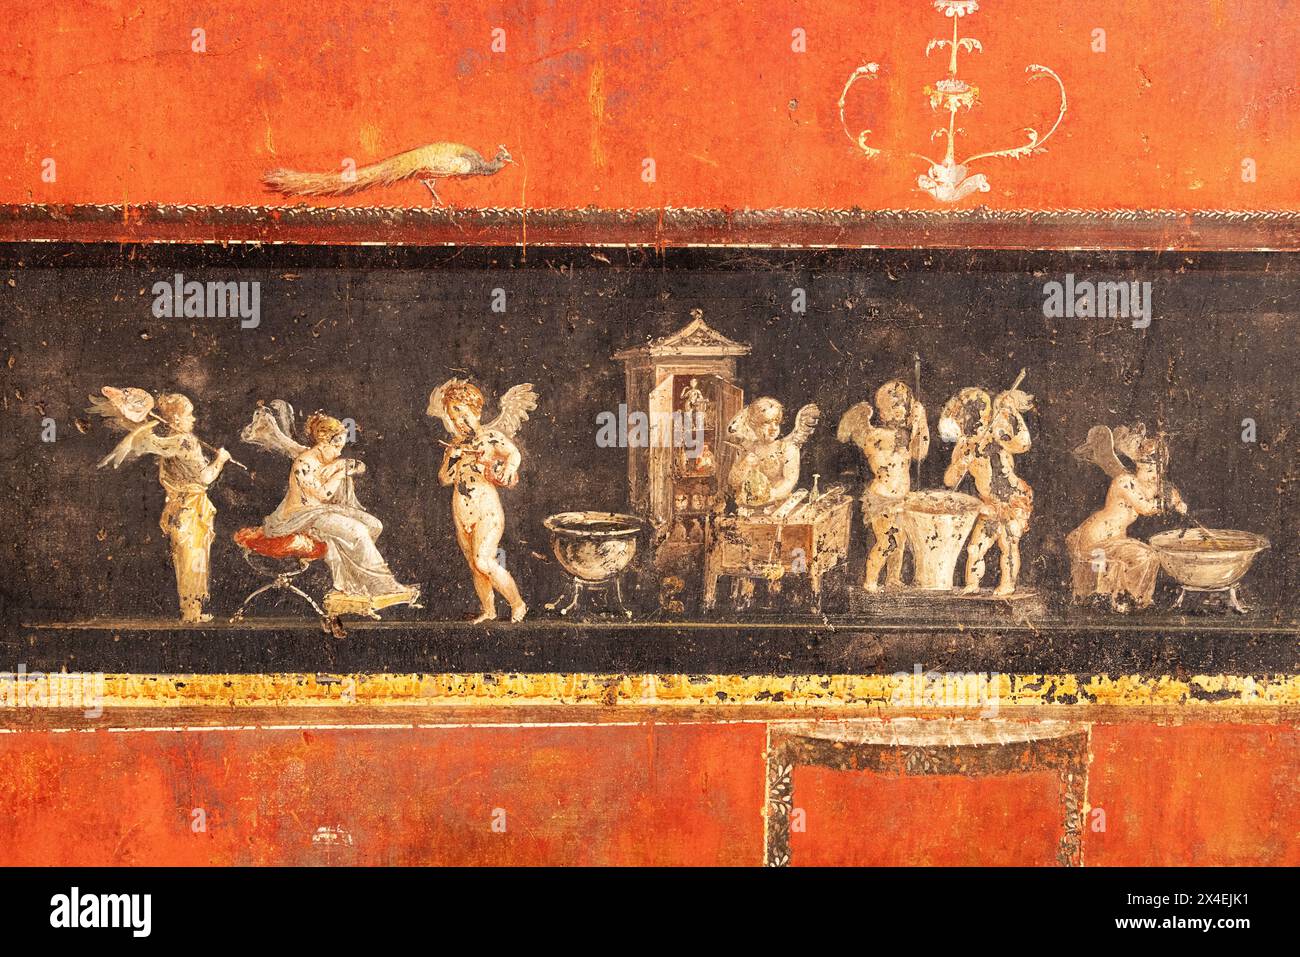 Fresque de Pompéi - détail coloré des fresques de la villa de la Maison de Vettii, site du patrimoine mondial de l'UNESCO, Pompéi, Campanie, Italie Banque D'Images